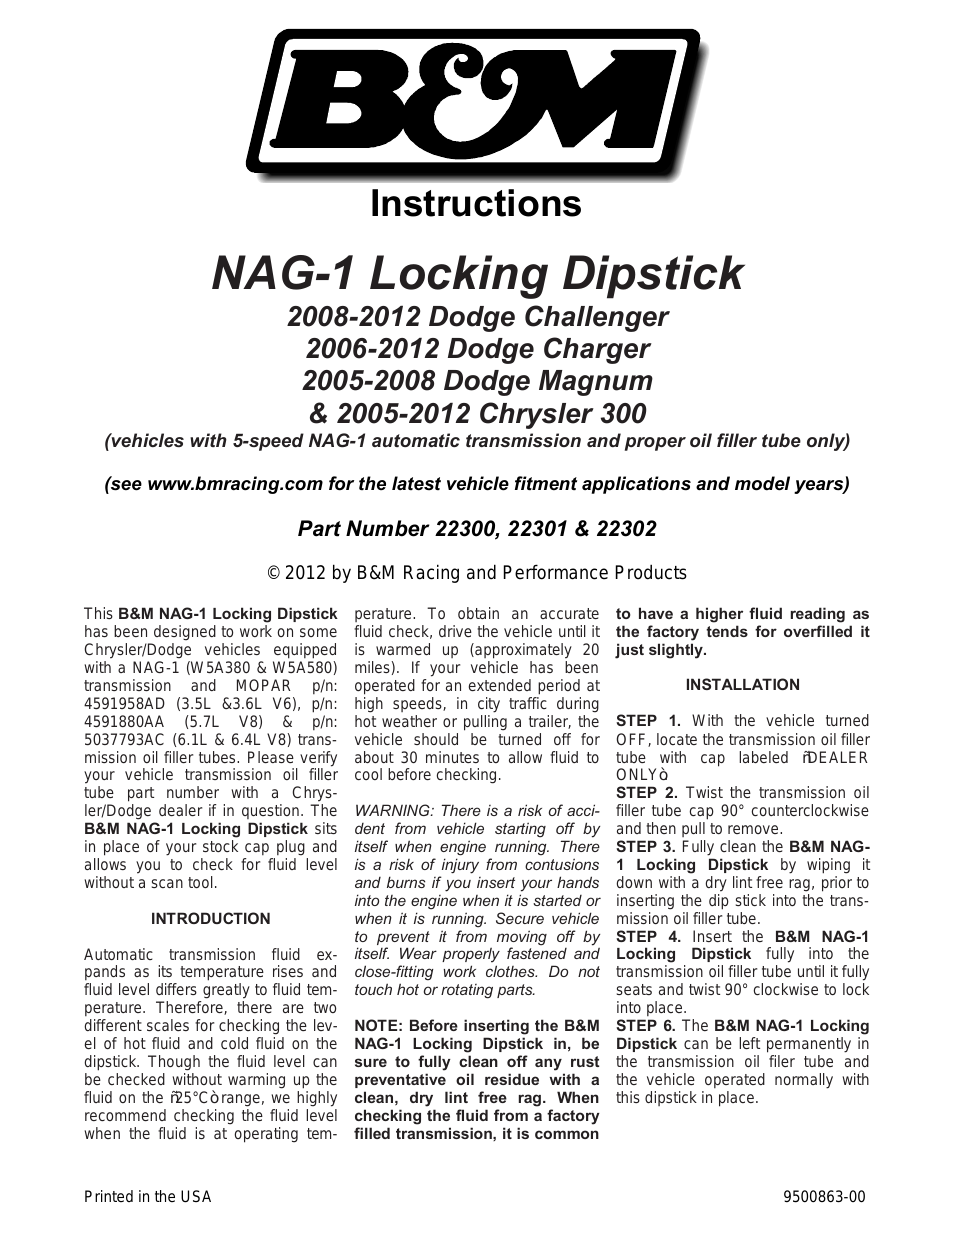 22300 NAG-1 Locking Trans Dipstick